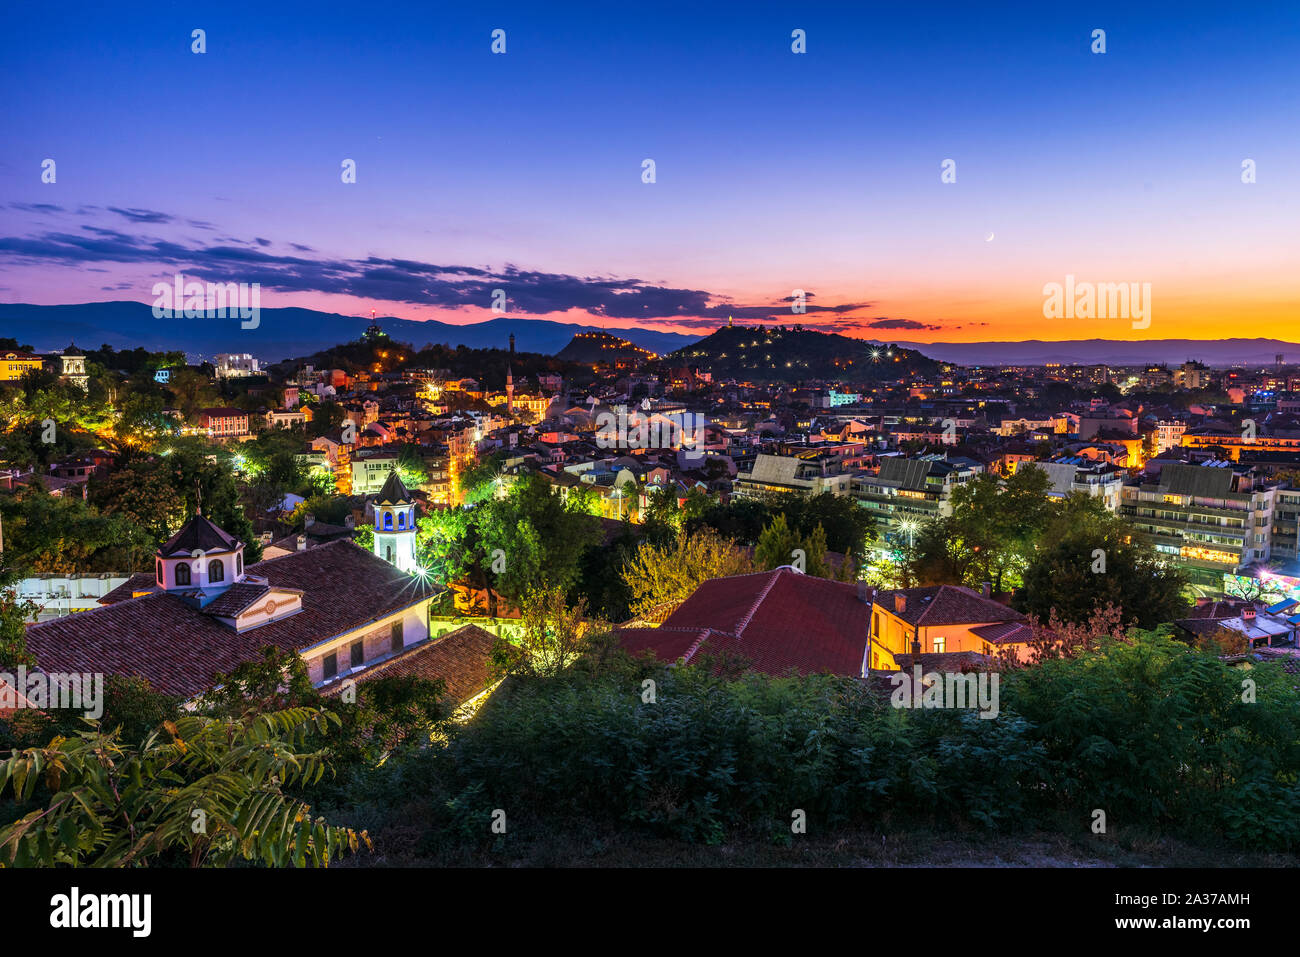 La ville de Plovdiv, en Bulgarie. Photo panoramique sur la ville après le coucher du soleil. Banque D'Images